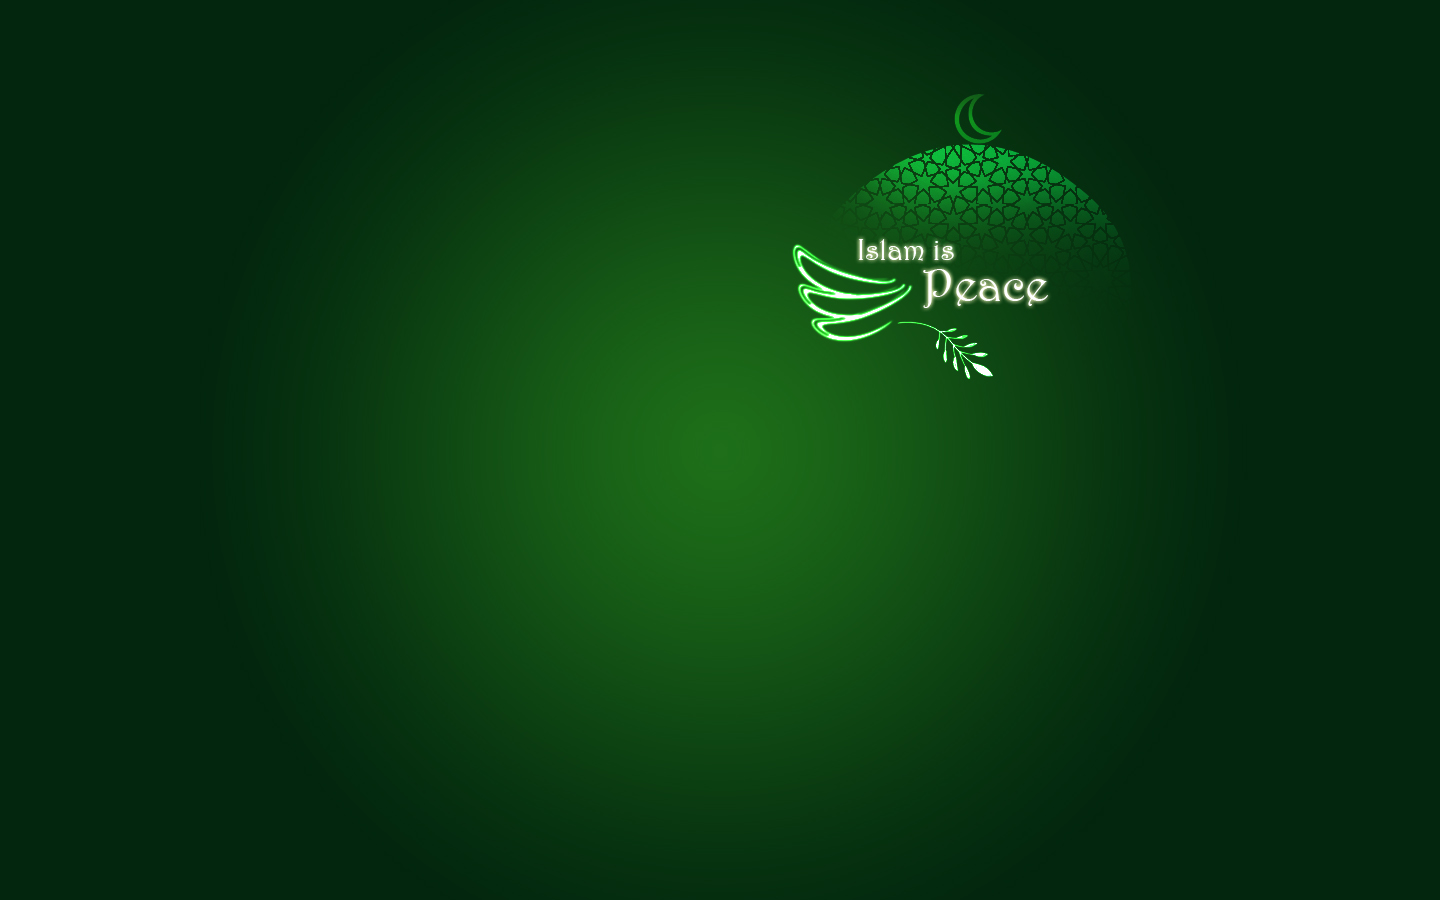 Islam_is_Peace_by_Sunbirdy.jpg